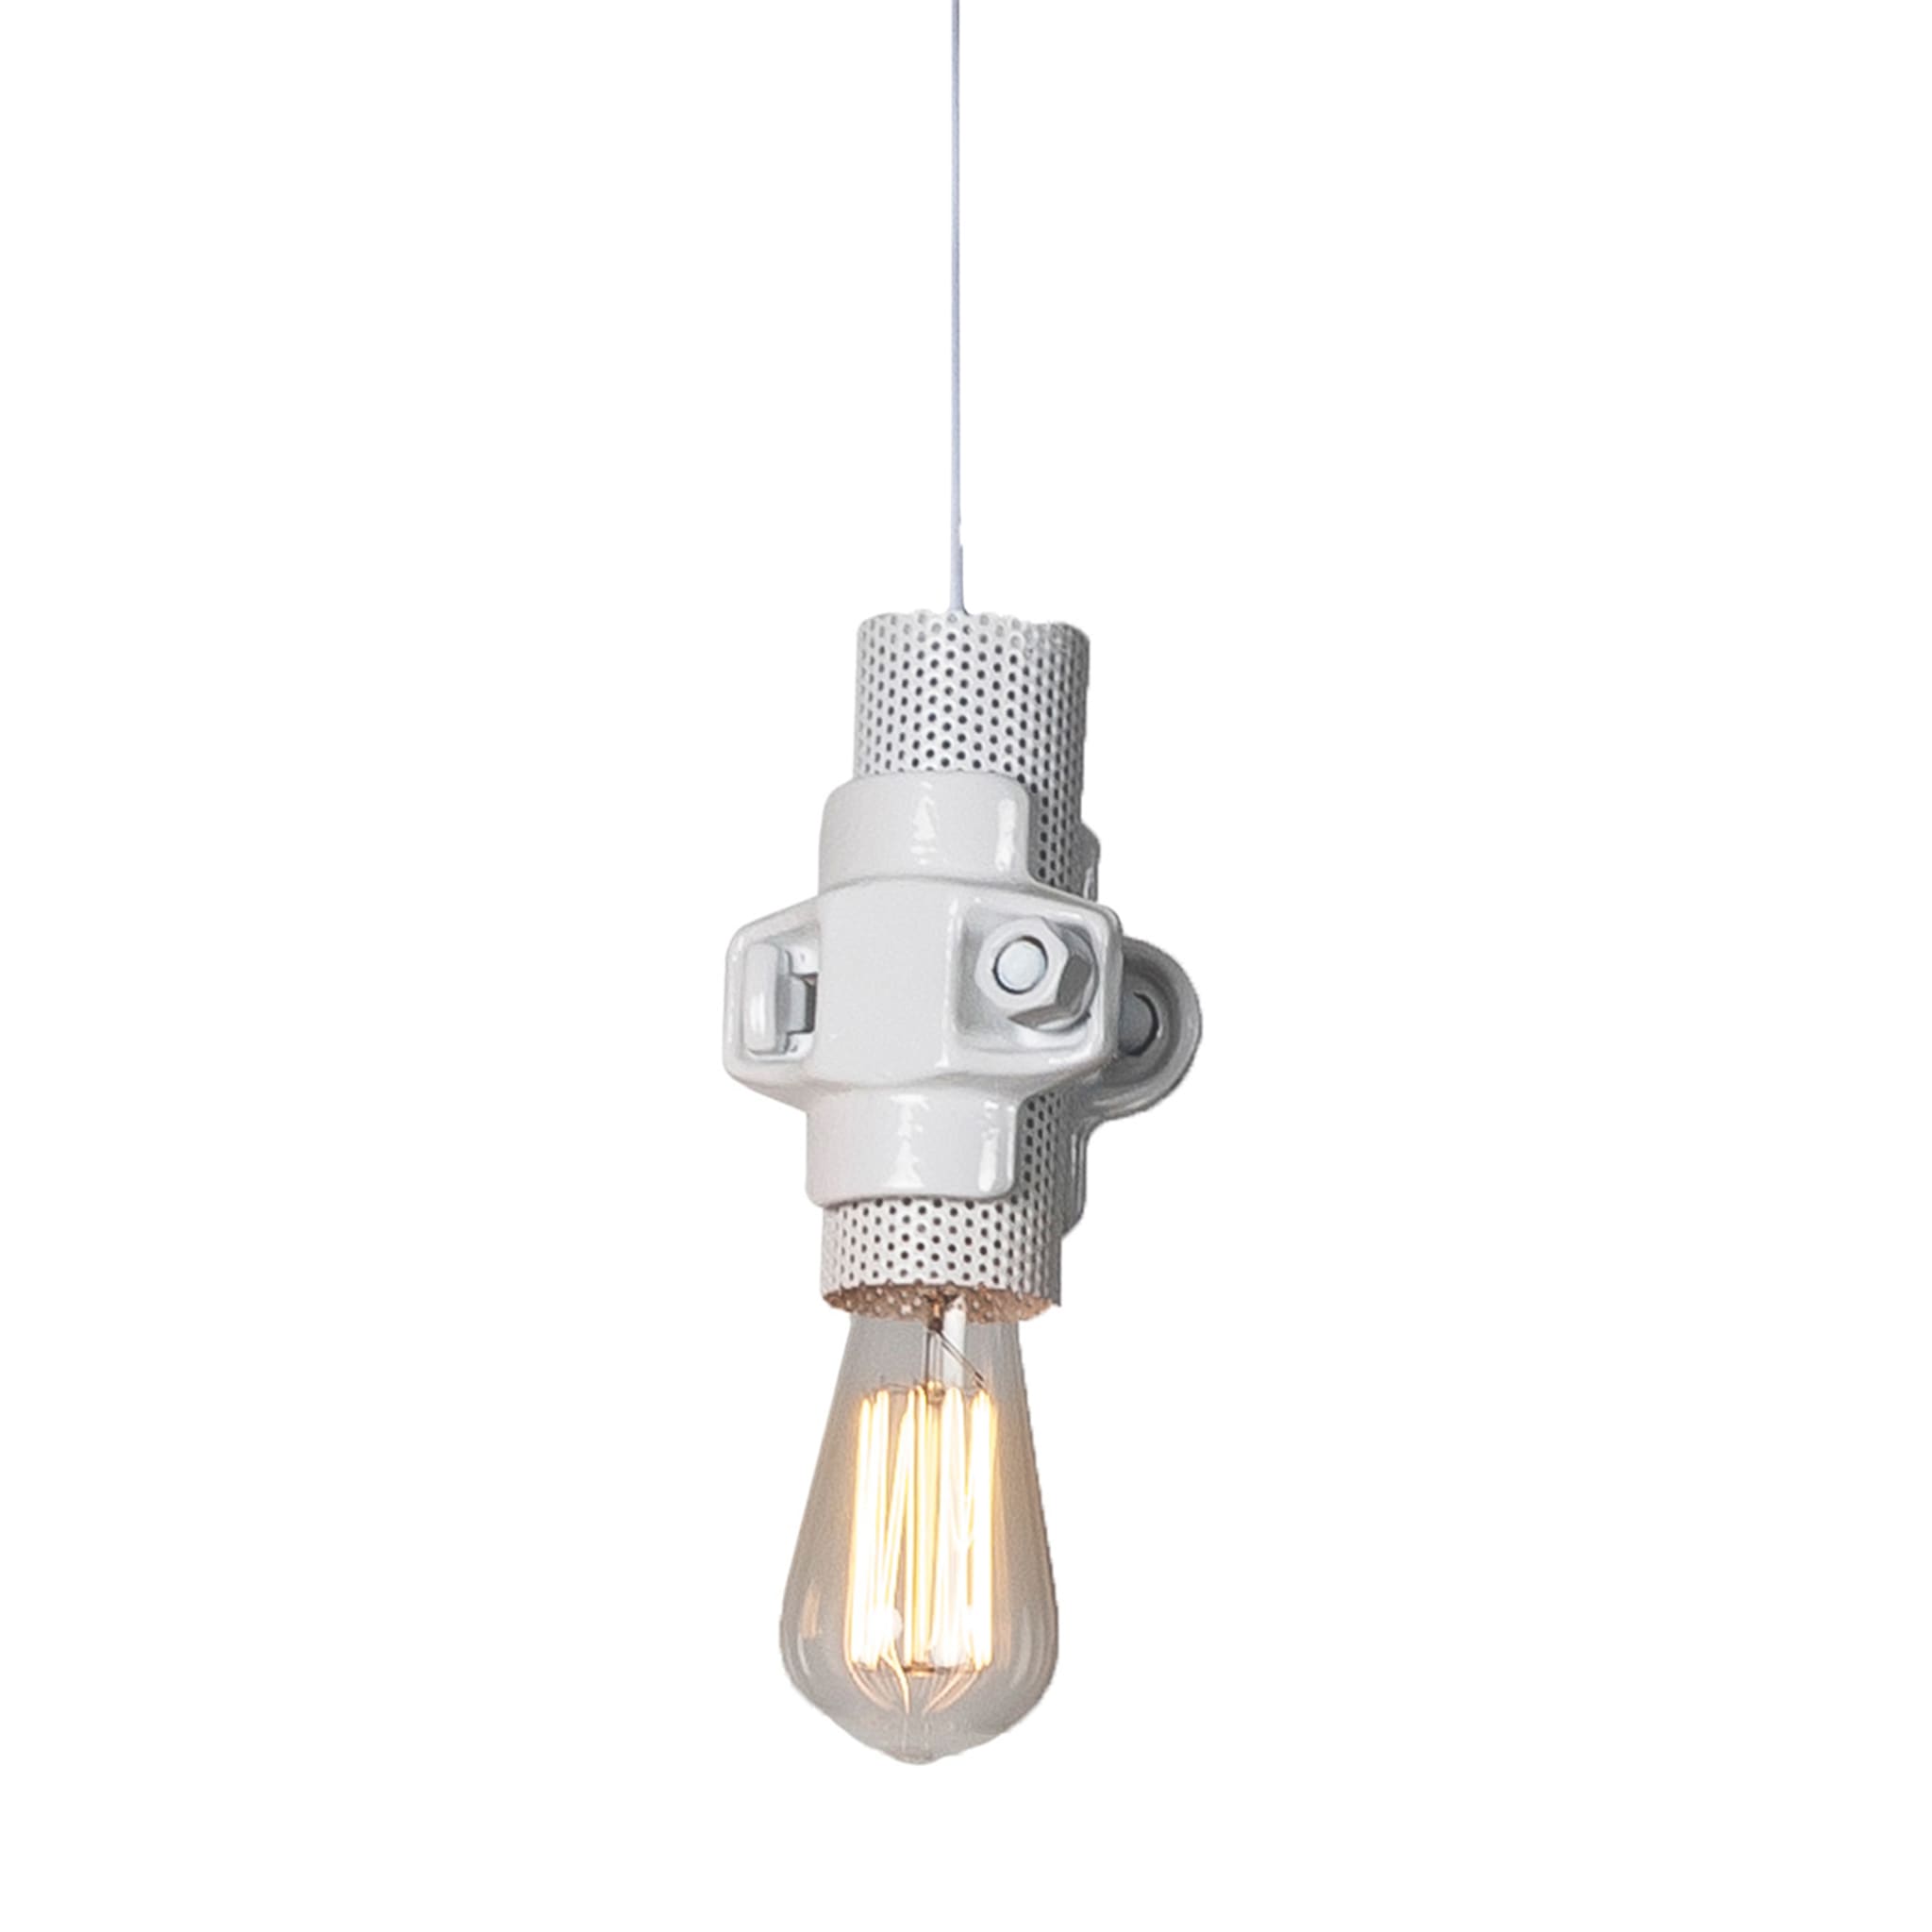 Nando S White Pendant Lamp by Luca De Bona & Dario De Meo - Main view